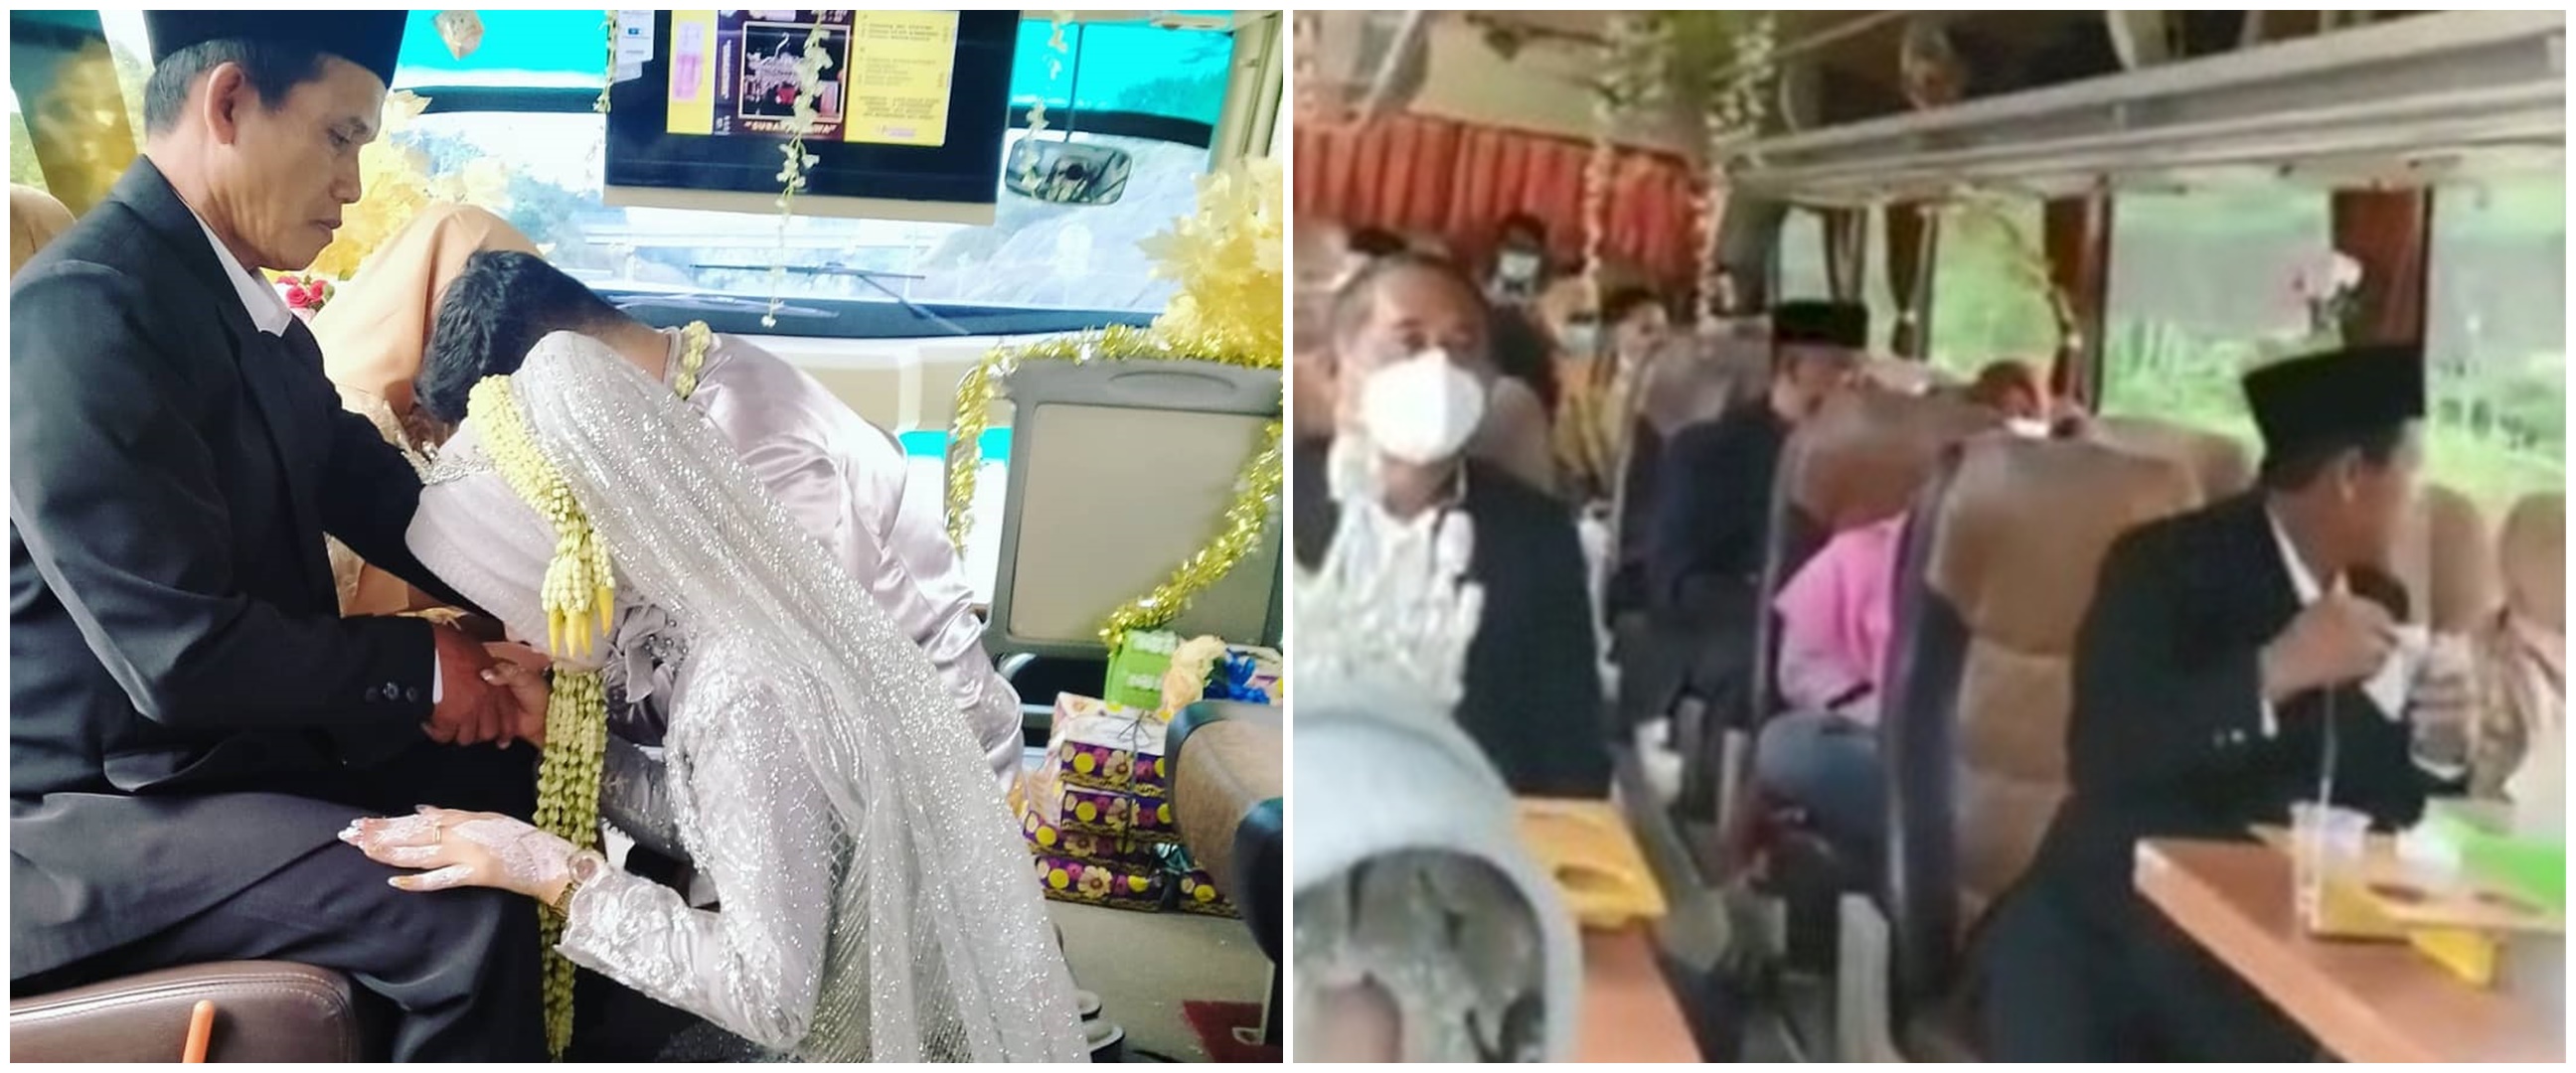 Viral pasangan menikah di dalam bus, hindari kerumunan saat PPKM